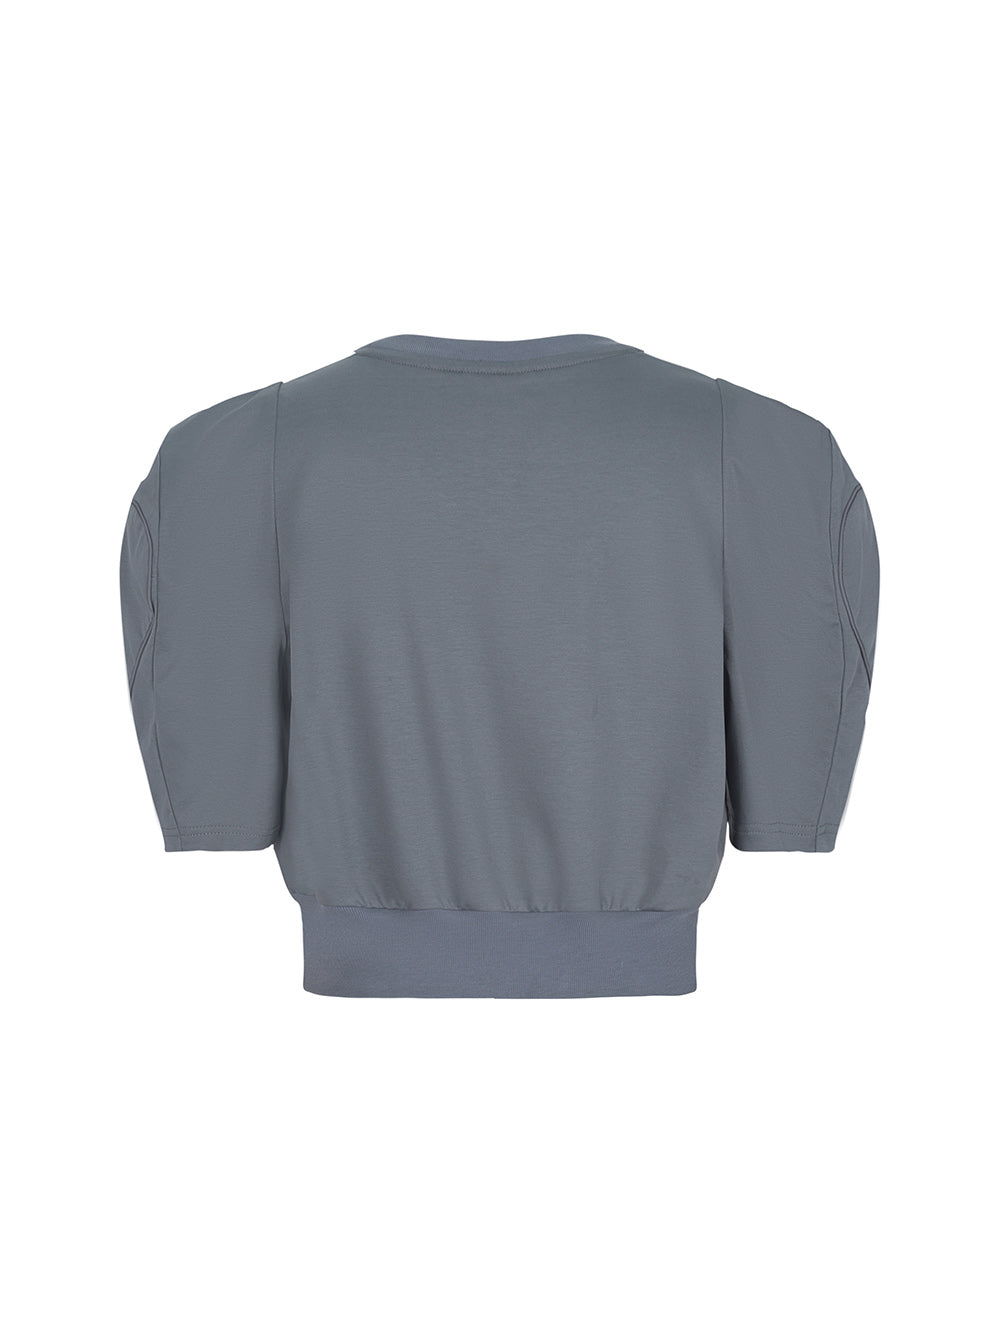 MUKZIN Iron Grey Nipped Waist T-Shirt